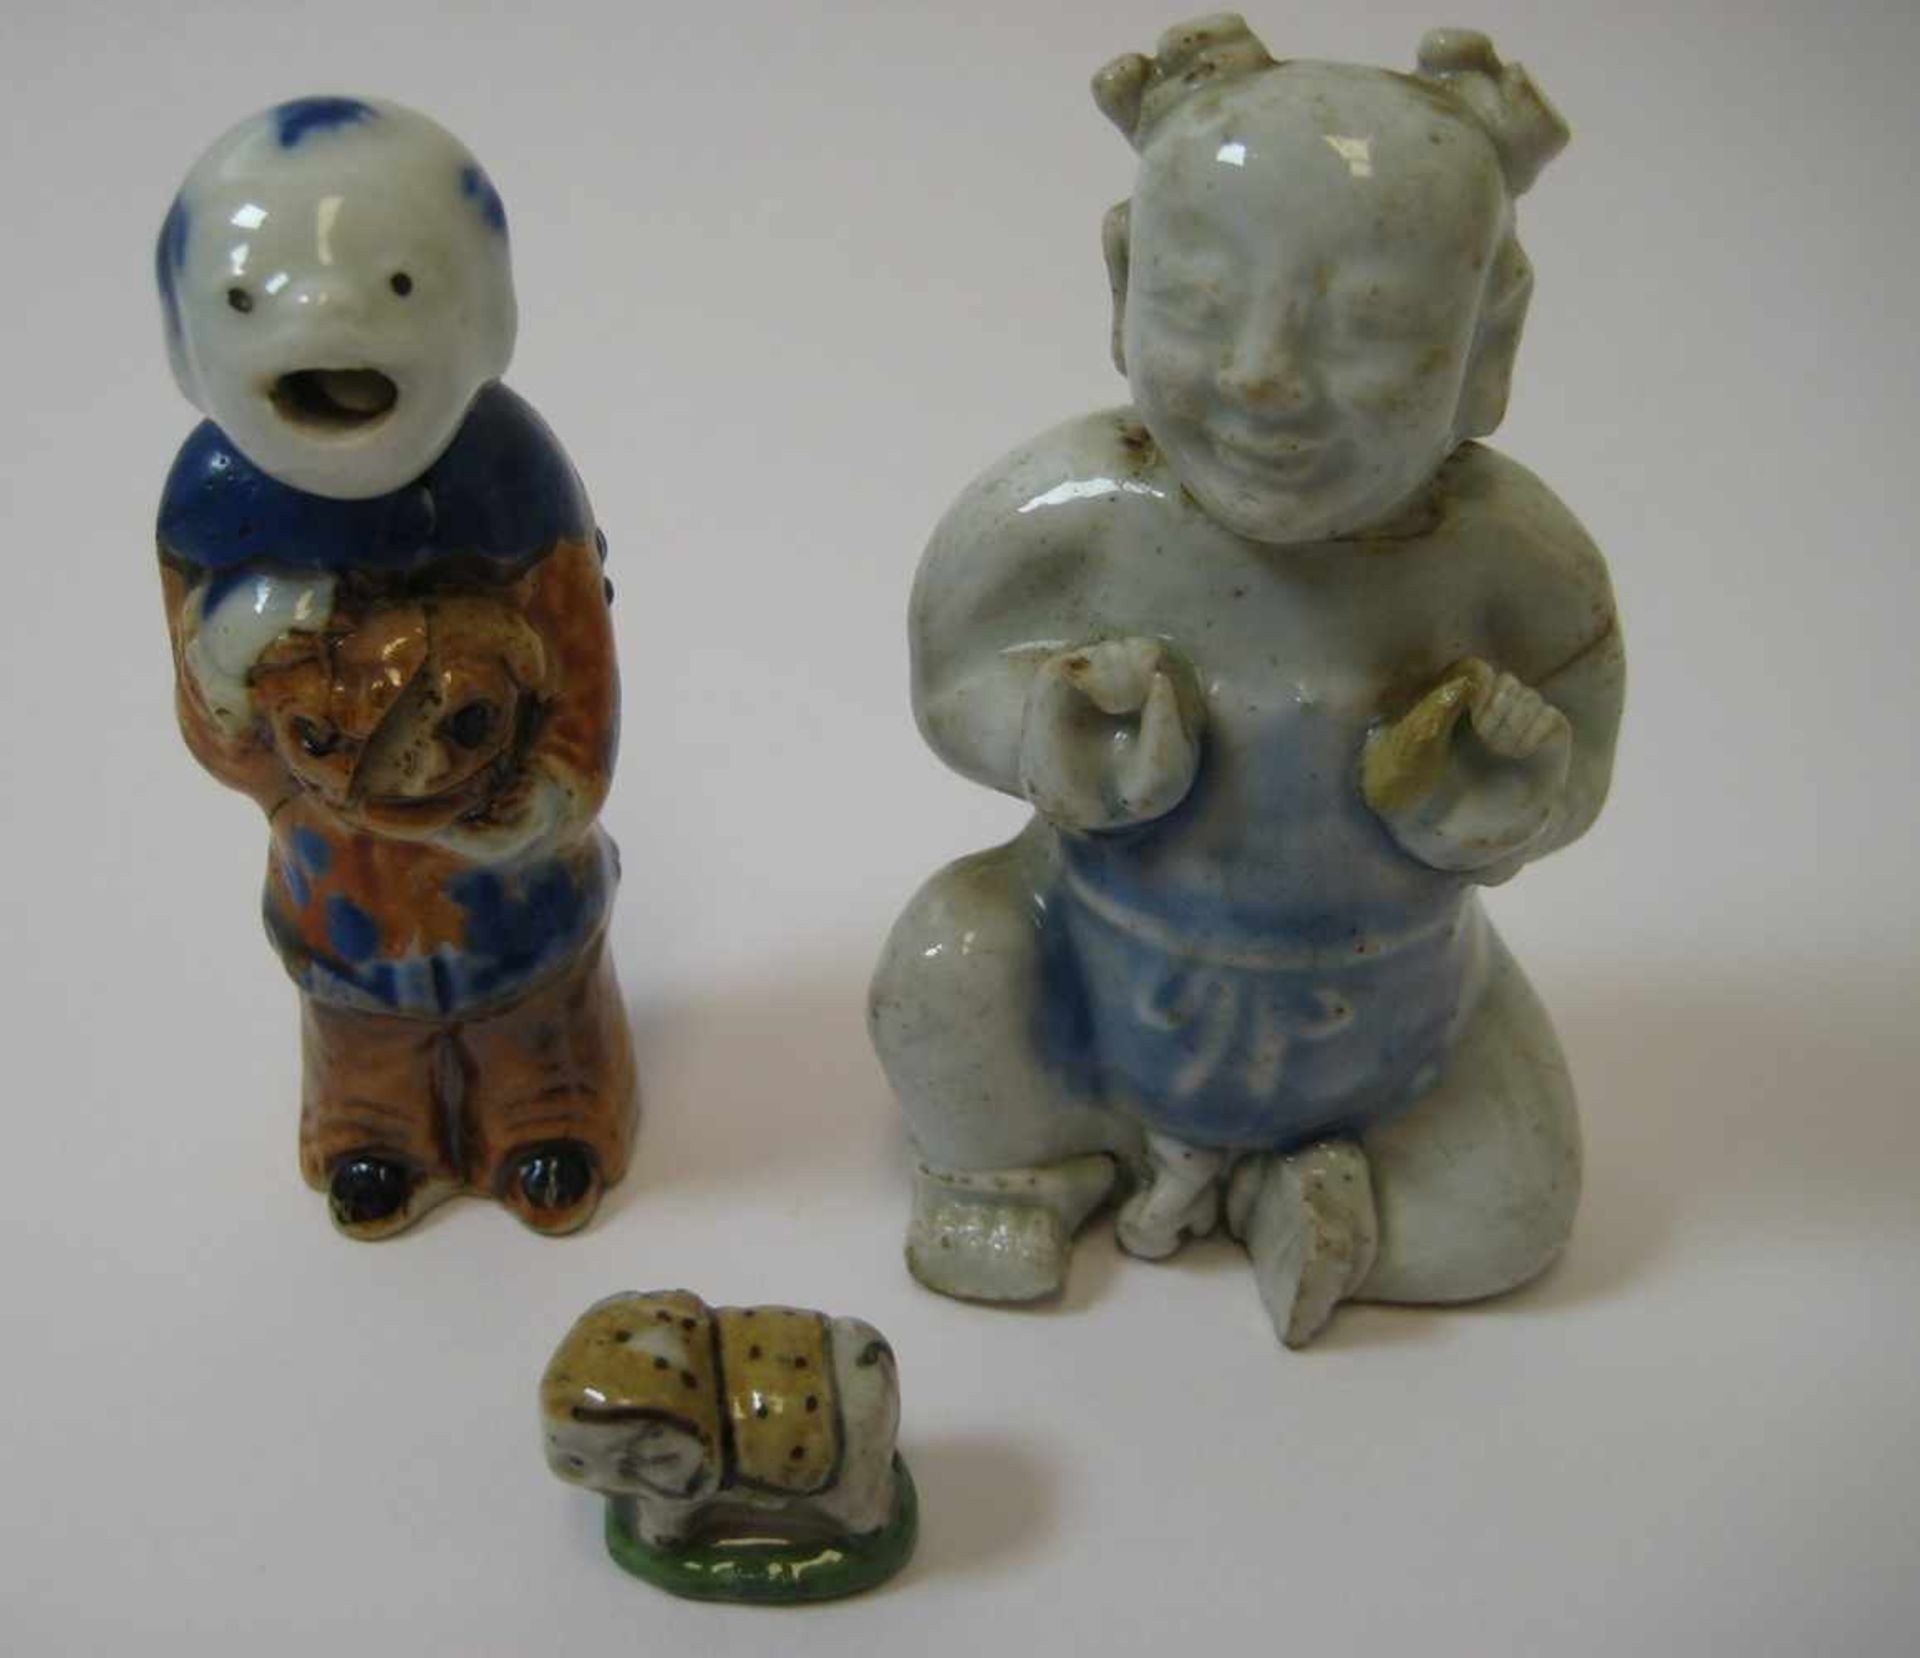 3 Porzellanfiguren, China, antik, Porzellan mit polychromer Bemalung, rest., h 1,2/7,5/8 cm.- - -